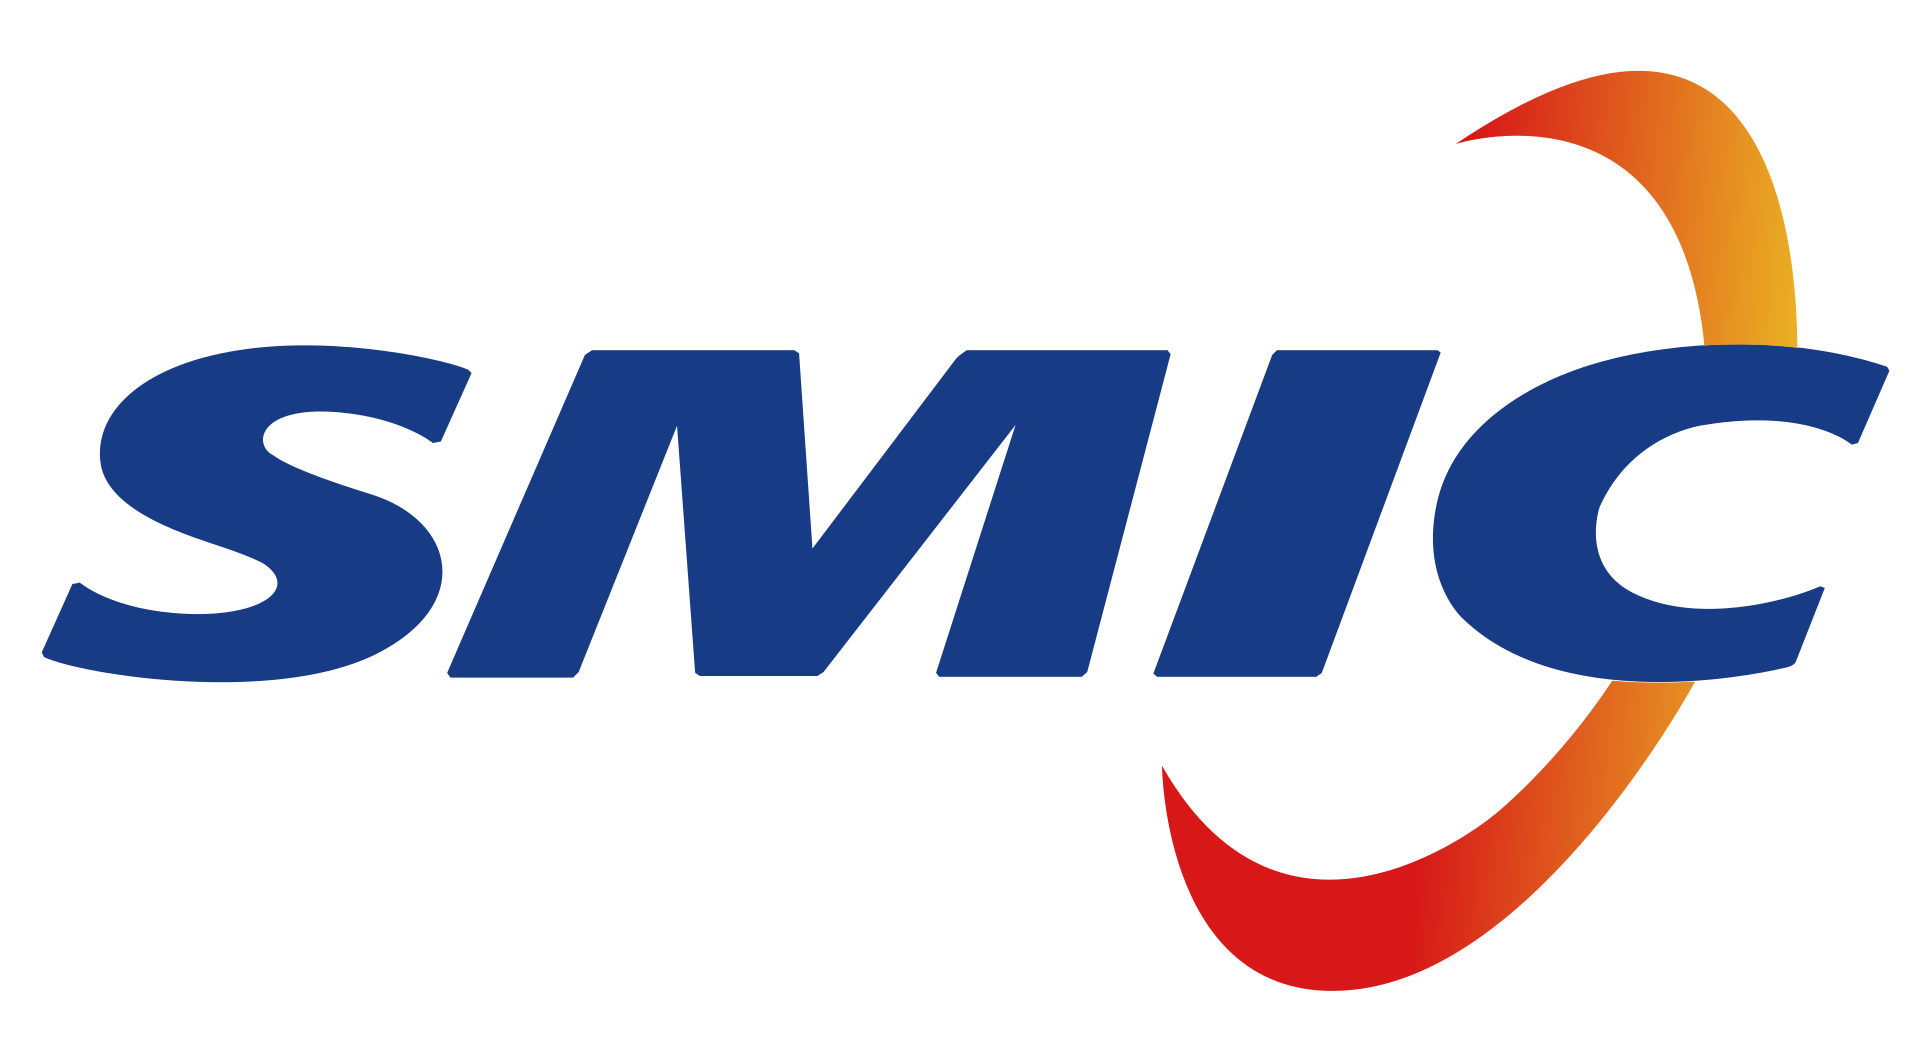 SMIC บริษัทผลิตชิปสัญชาติจีนลงทุนเกือบ 300,000 ล้านเพื่อสร้างโรงงานผลิตชิปแห่งใหม่ในเซี่ยงไฮ้